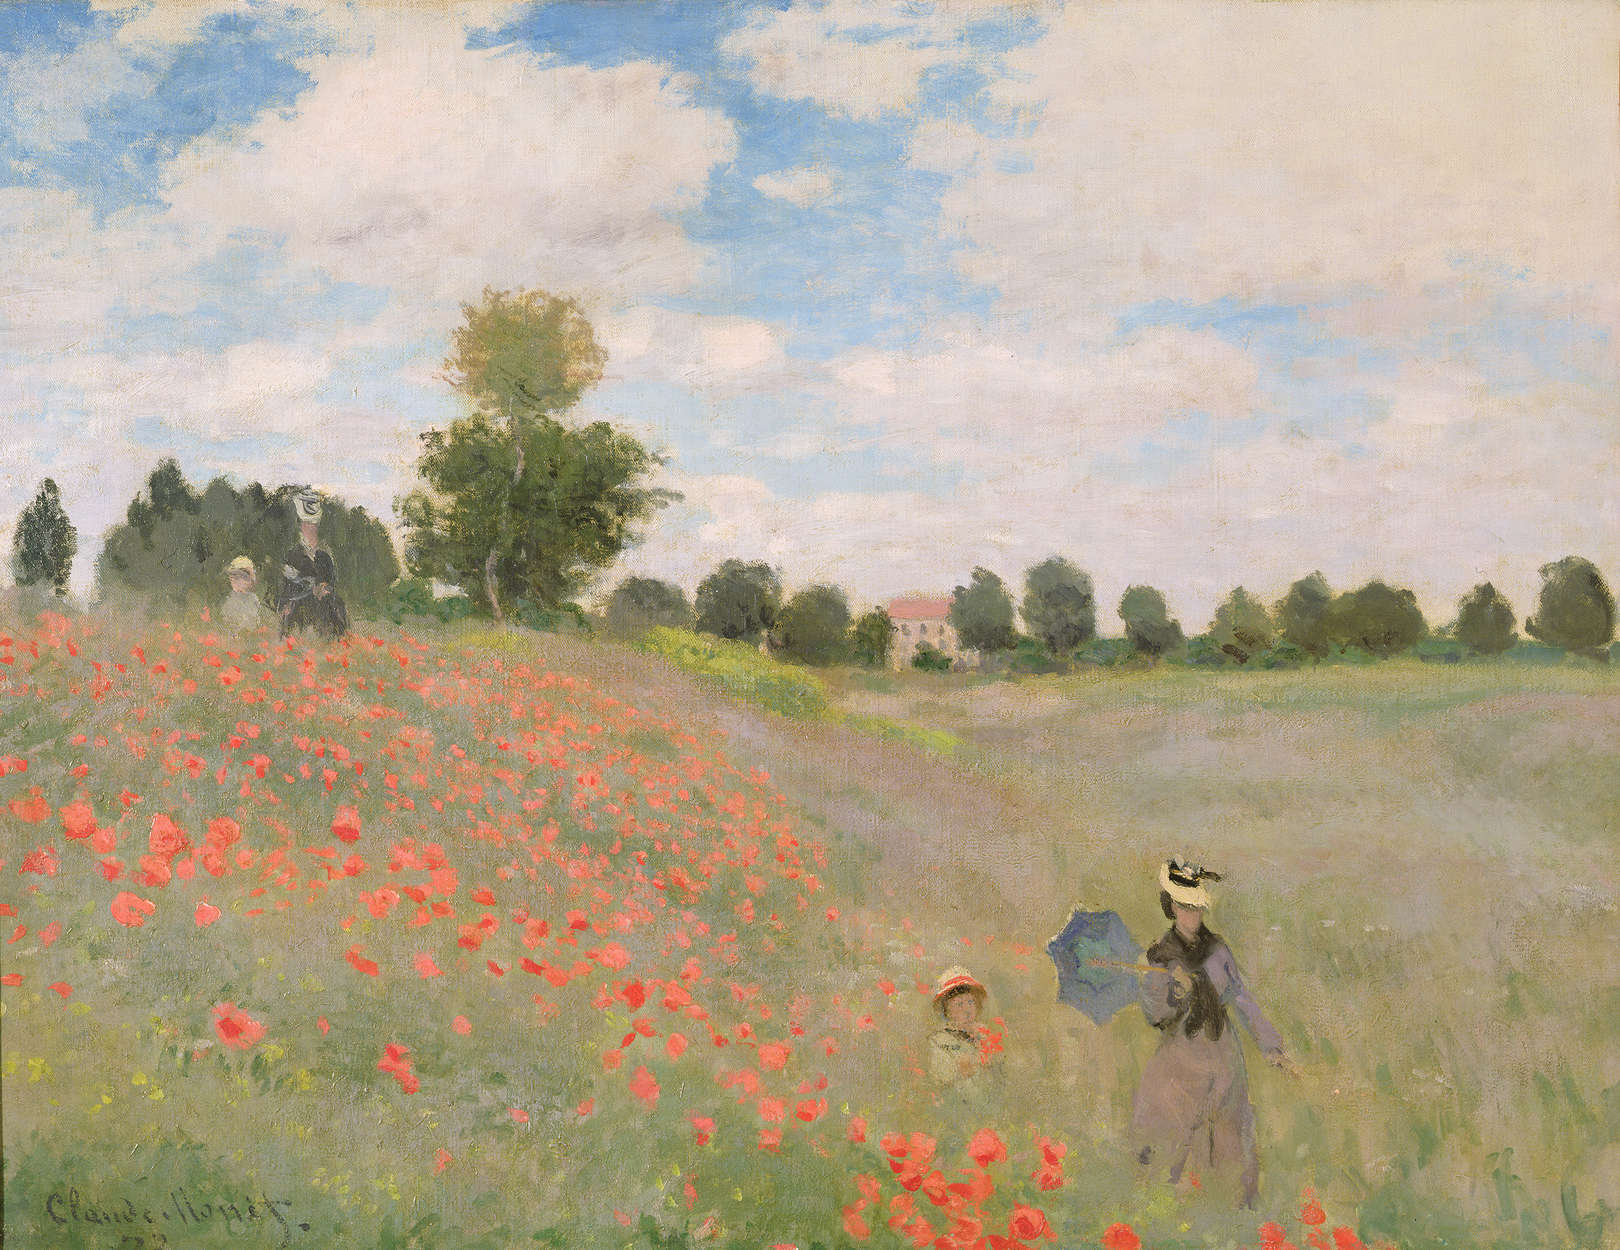             Papier peint panoramique "Coquelicots sauvages" de Claude Monet
        